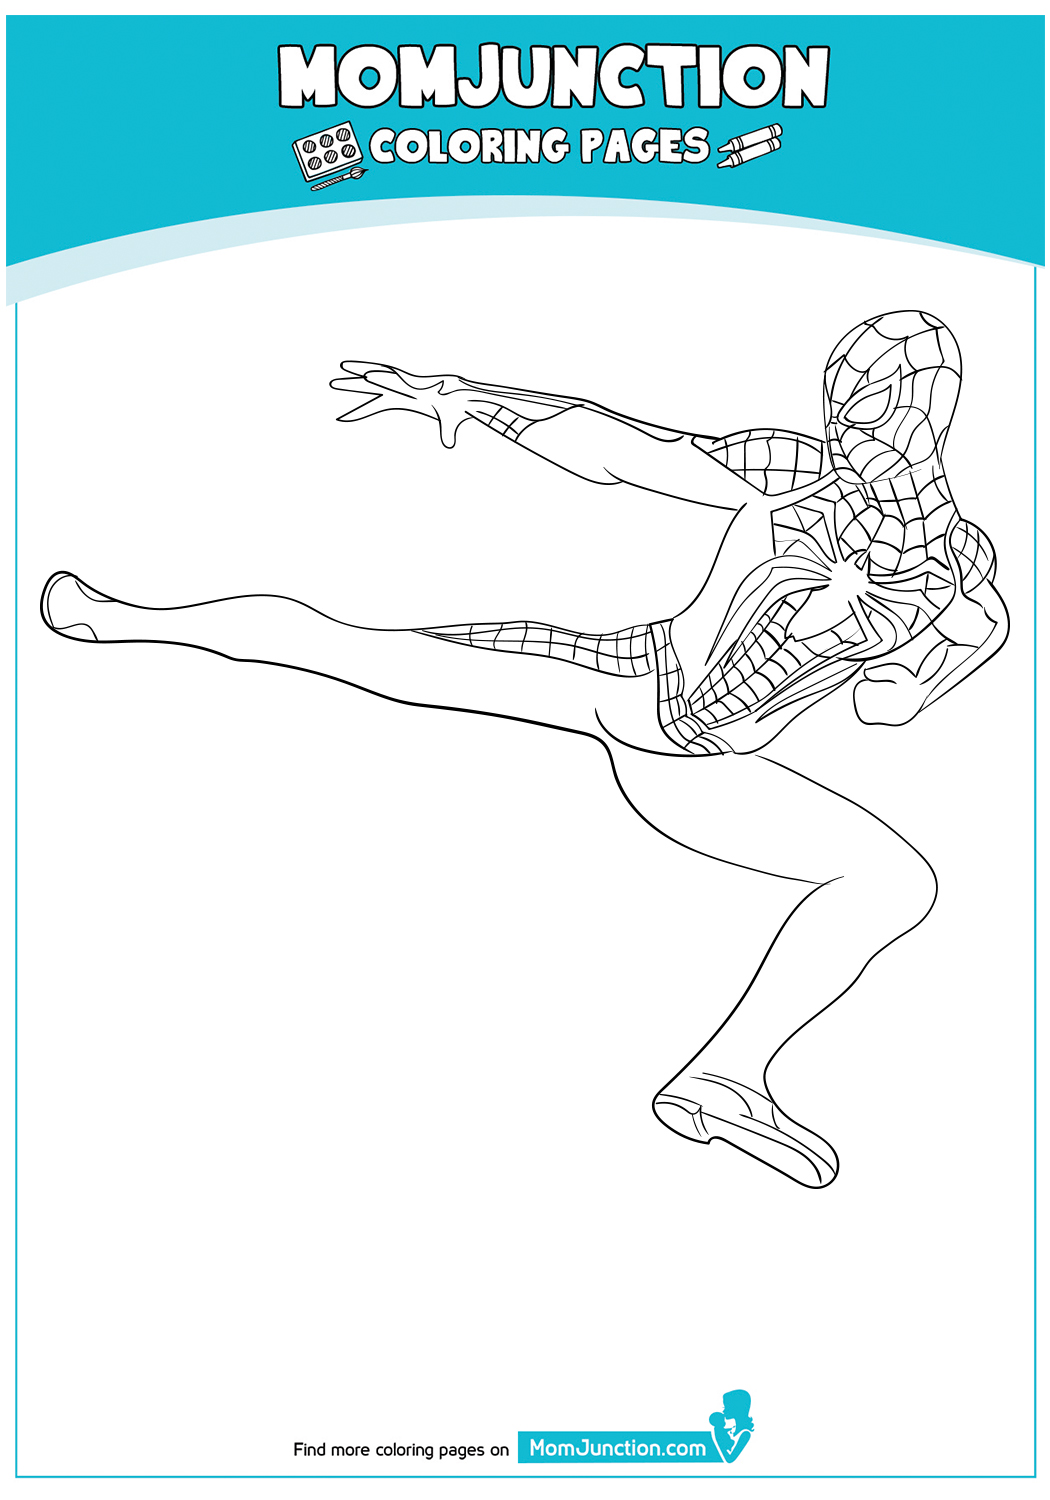 Spiderman-Kicking-The-Vilan